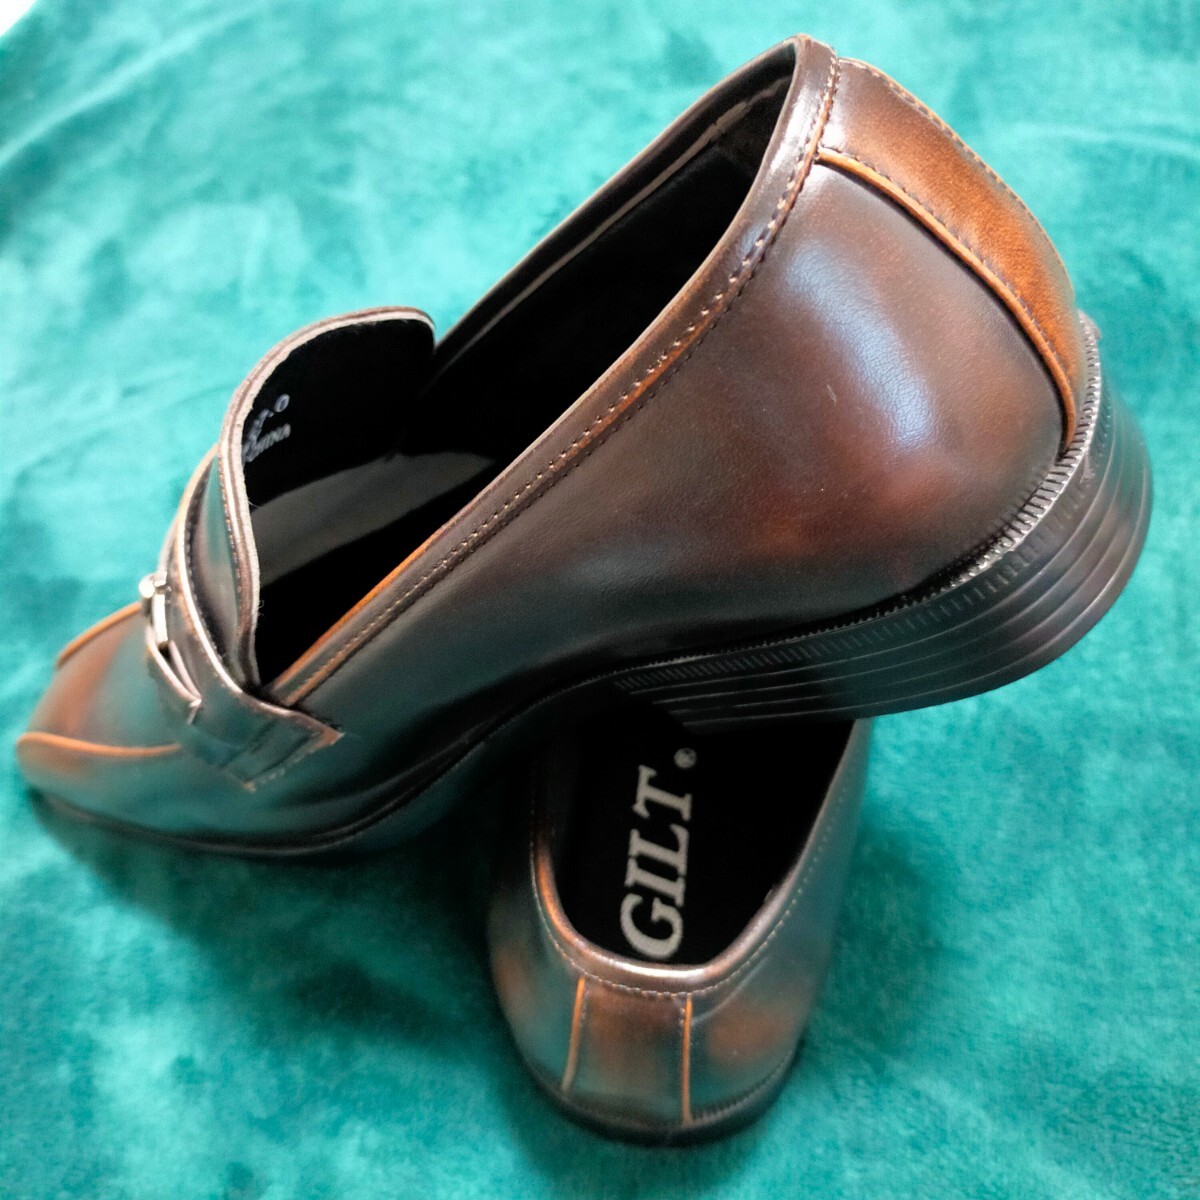 革靴 27'0 27㎝ 新品 未使用品 (サイズ違いの為に購入した靴) メンズシューズ ビジネスシューズ シューズ Men's 靴 の画像10